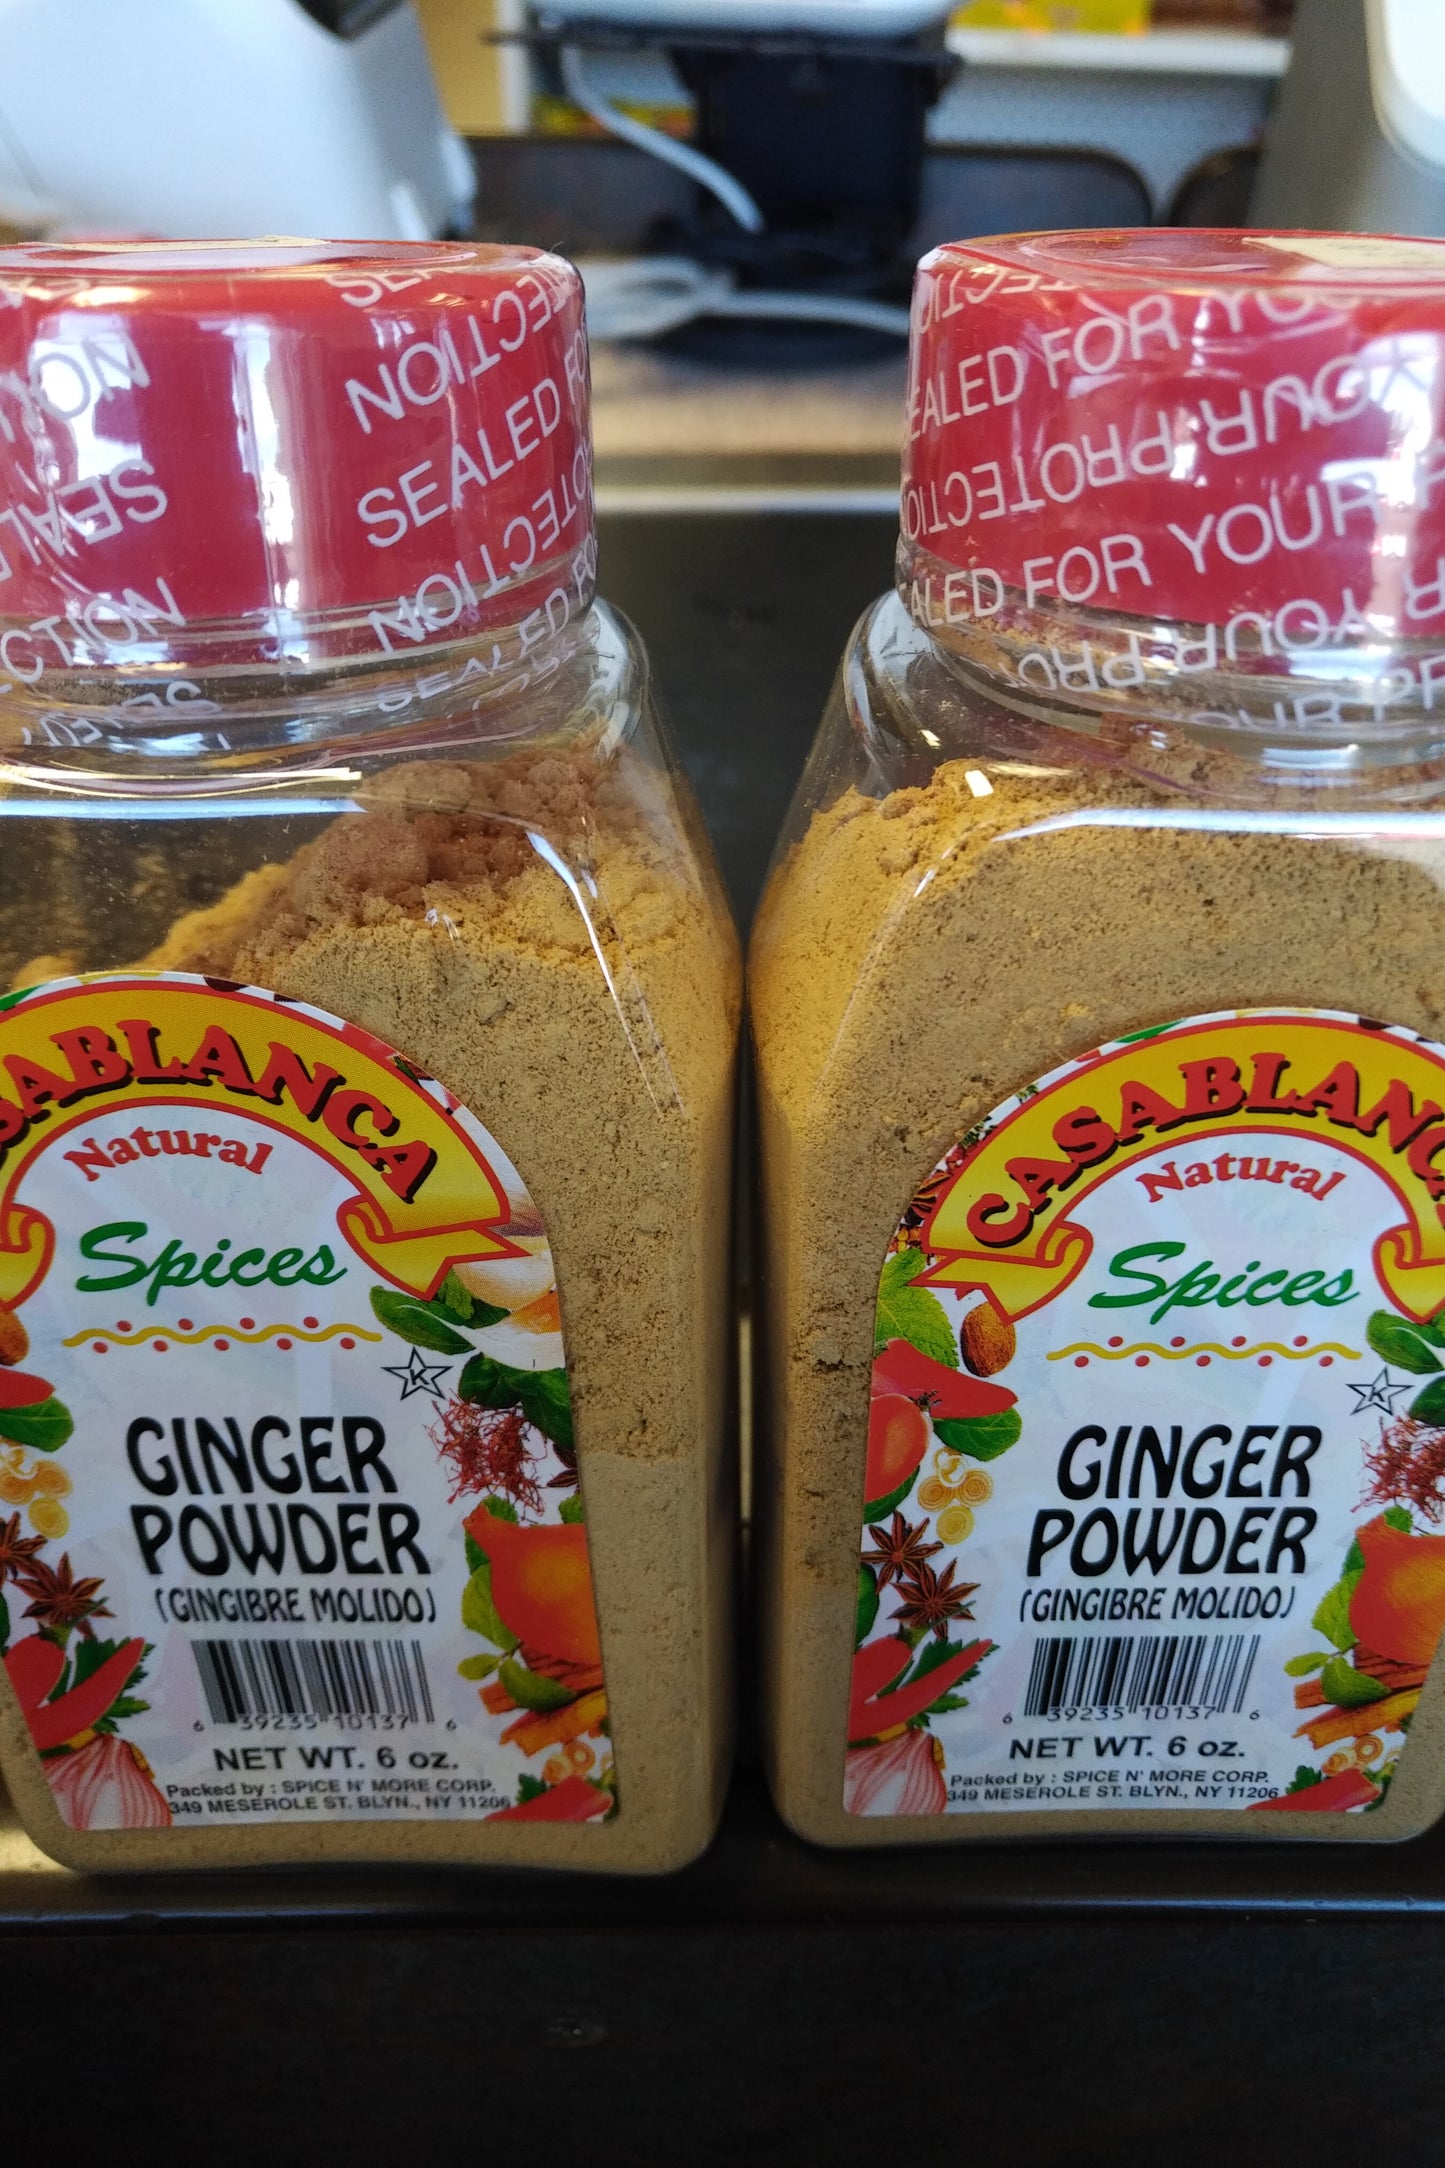 CasaBlanca Ginger Powder (Gingibre Molido) 6oz